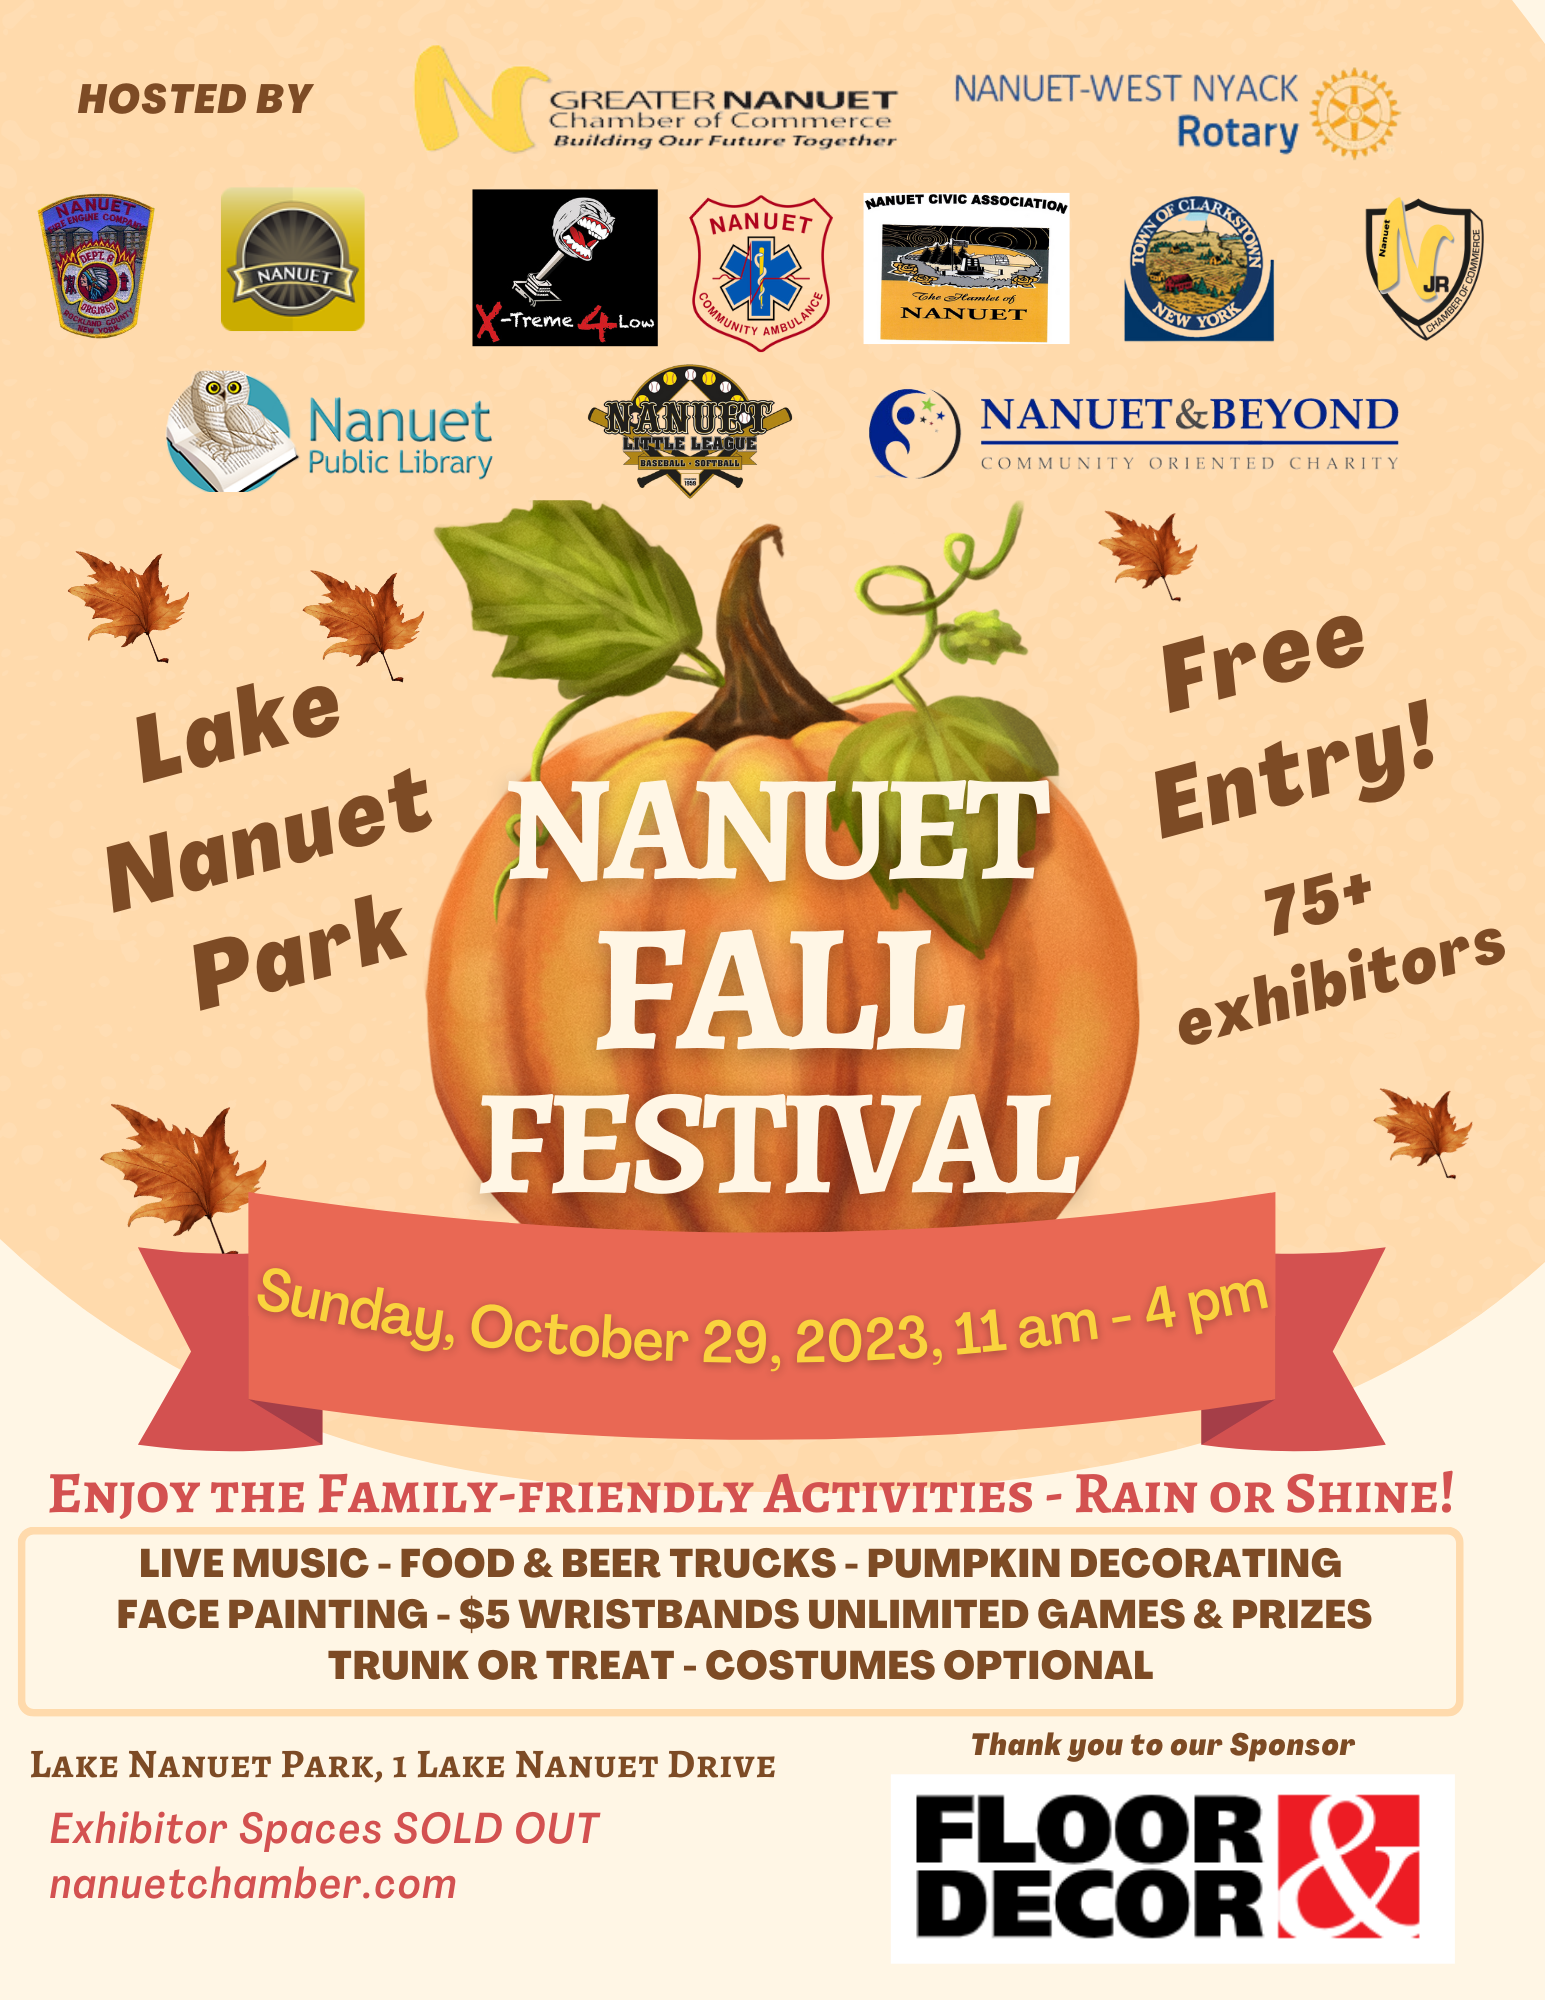 Nanuet Fall Festival Exhibitor Nanuet Chamber of Commerce